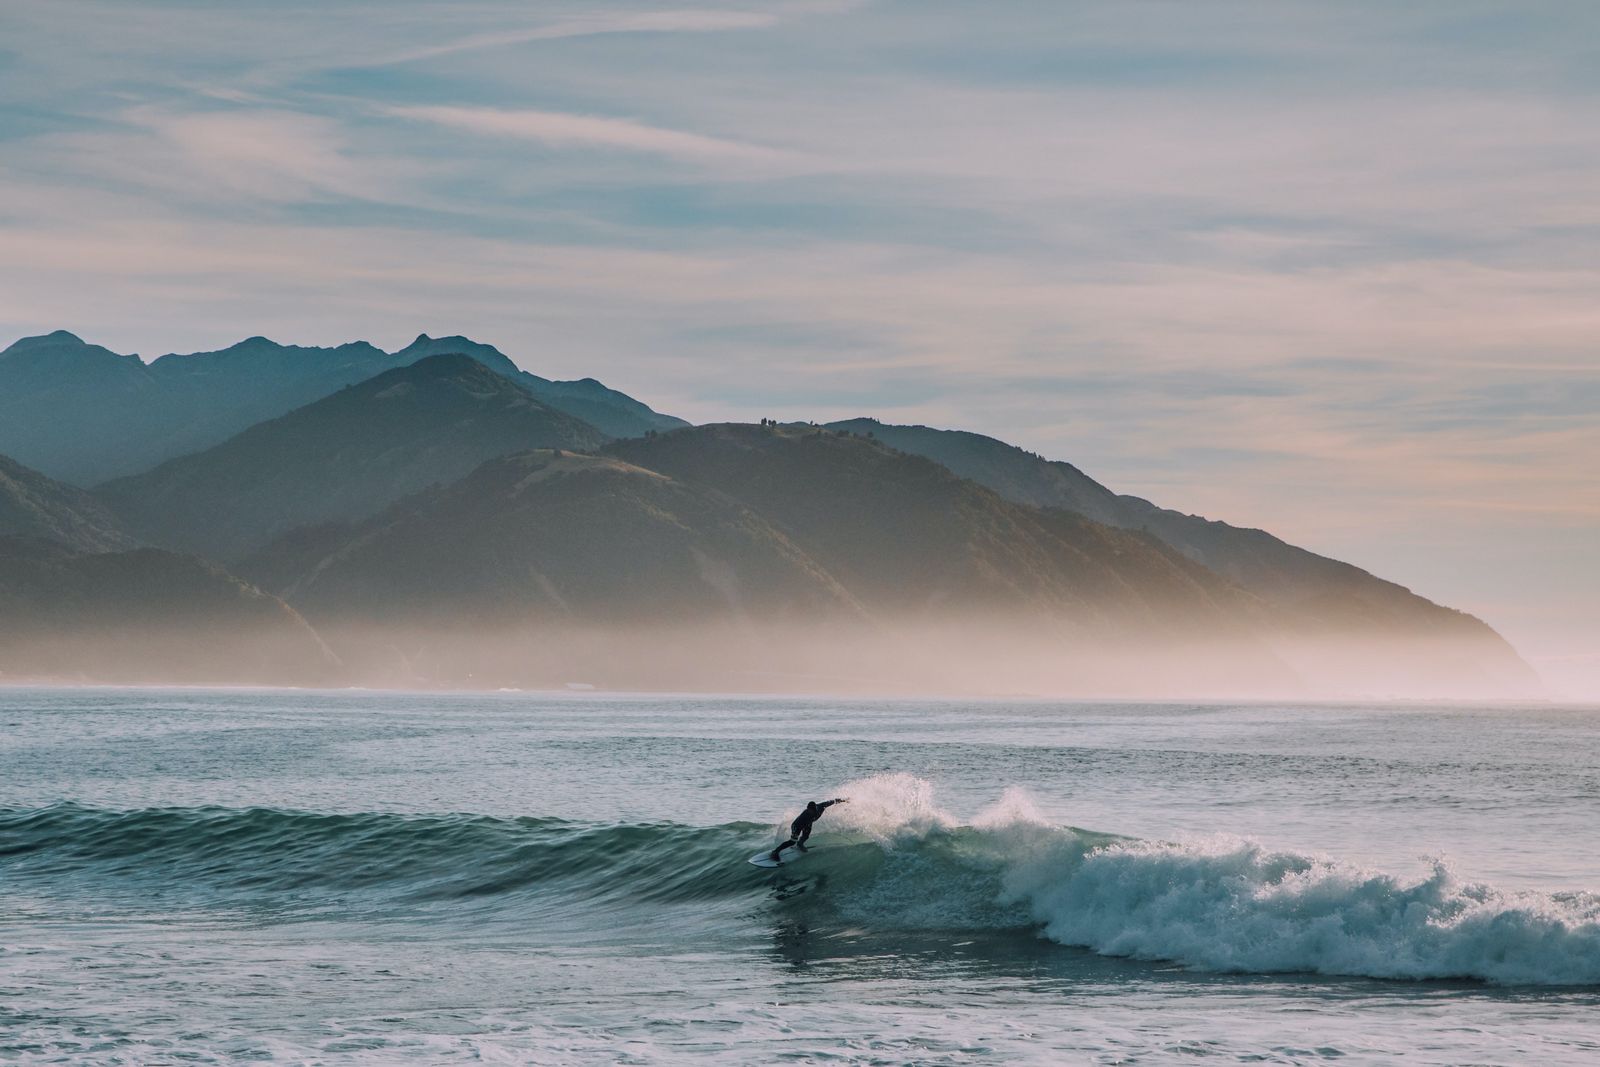 Okres falowania - kiedy są najlepsze warunki do surfowania?